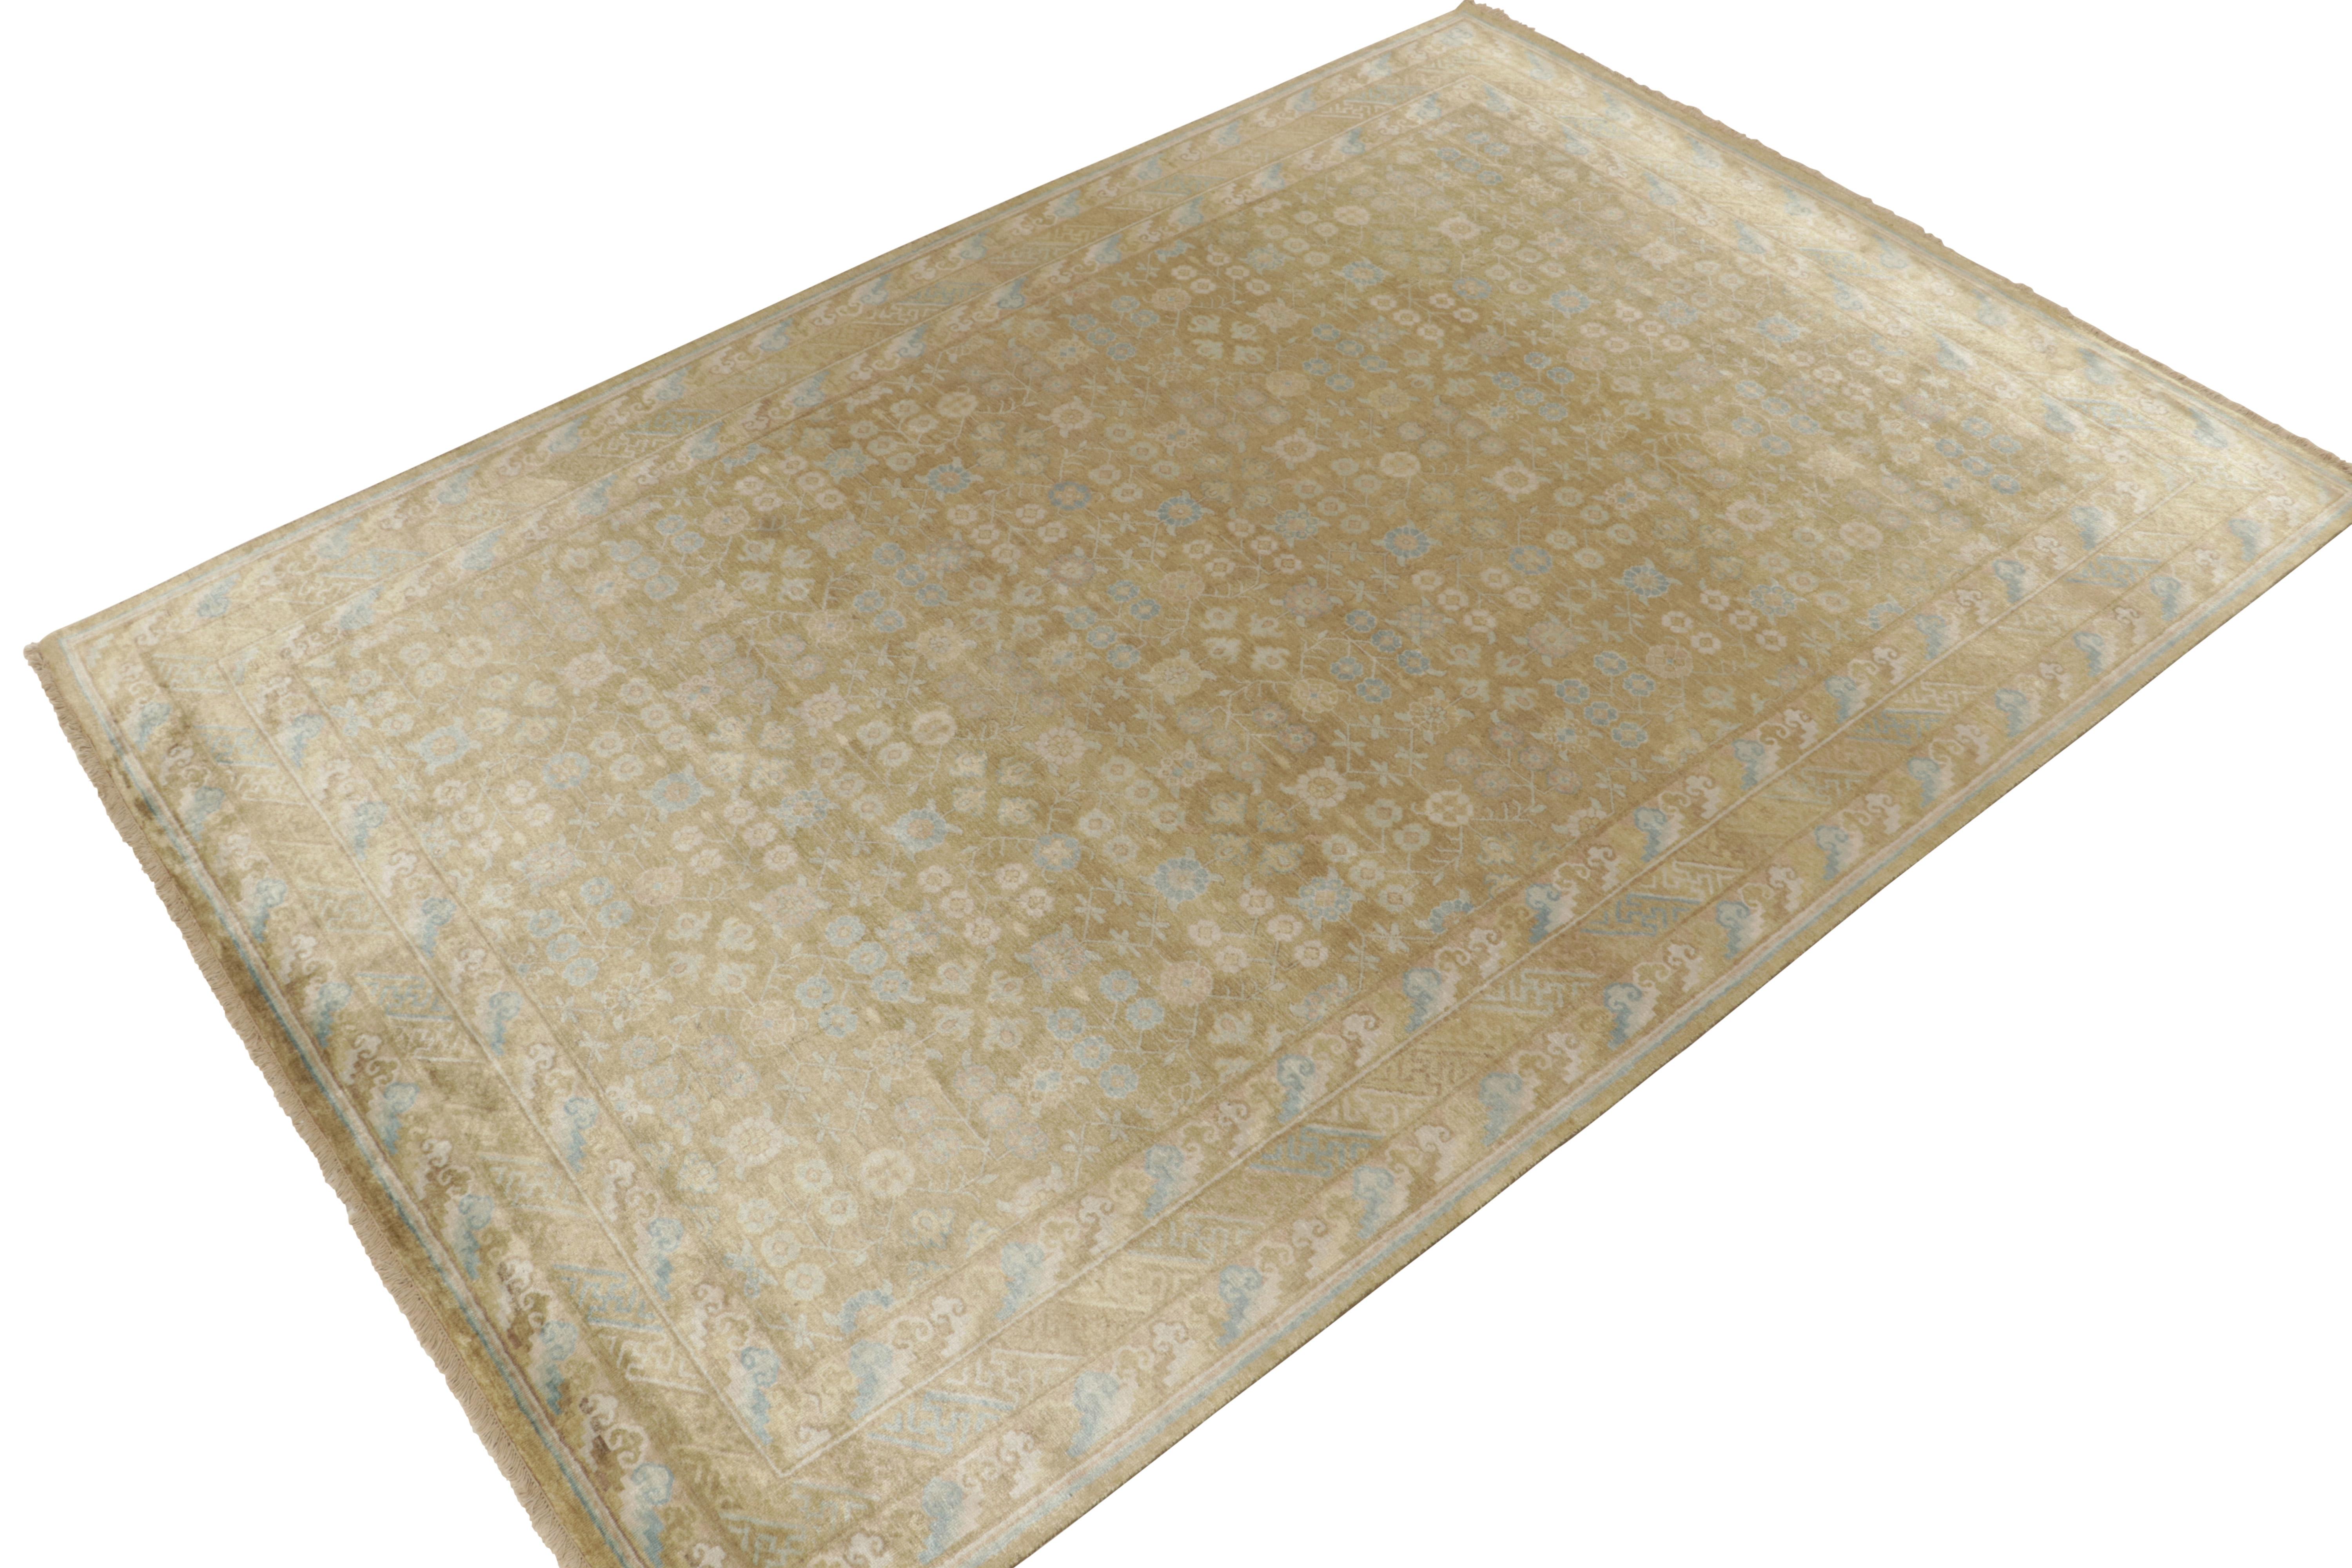 Noué à la main dans une soie luxueuse, ce tapis contemporain 8x12 de notre collection Modern Classics reprend de manière unique les styles des tapis anciens de Khotan-Samarkand.

Sur le Design/One : Une échelle gracieuse accueille une harmonie de